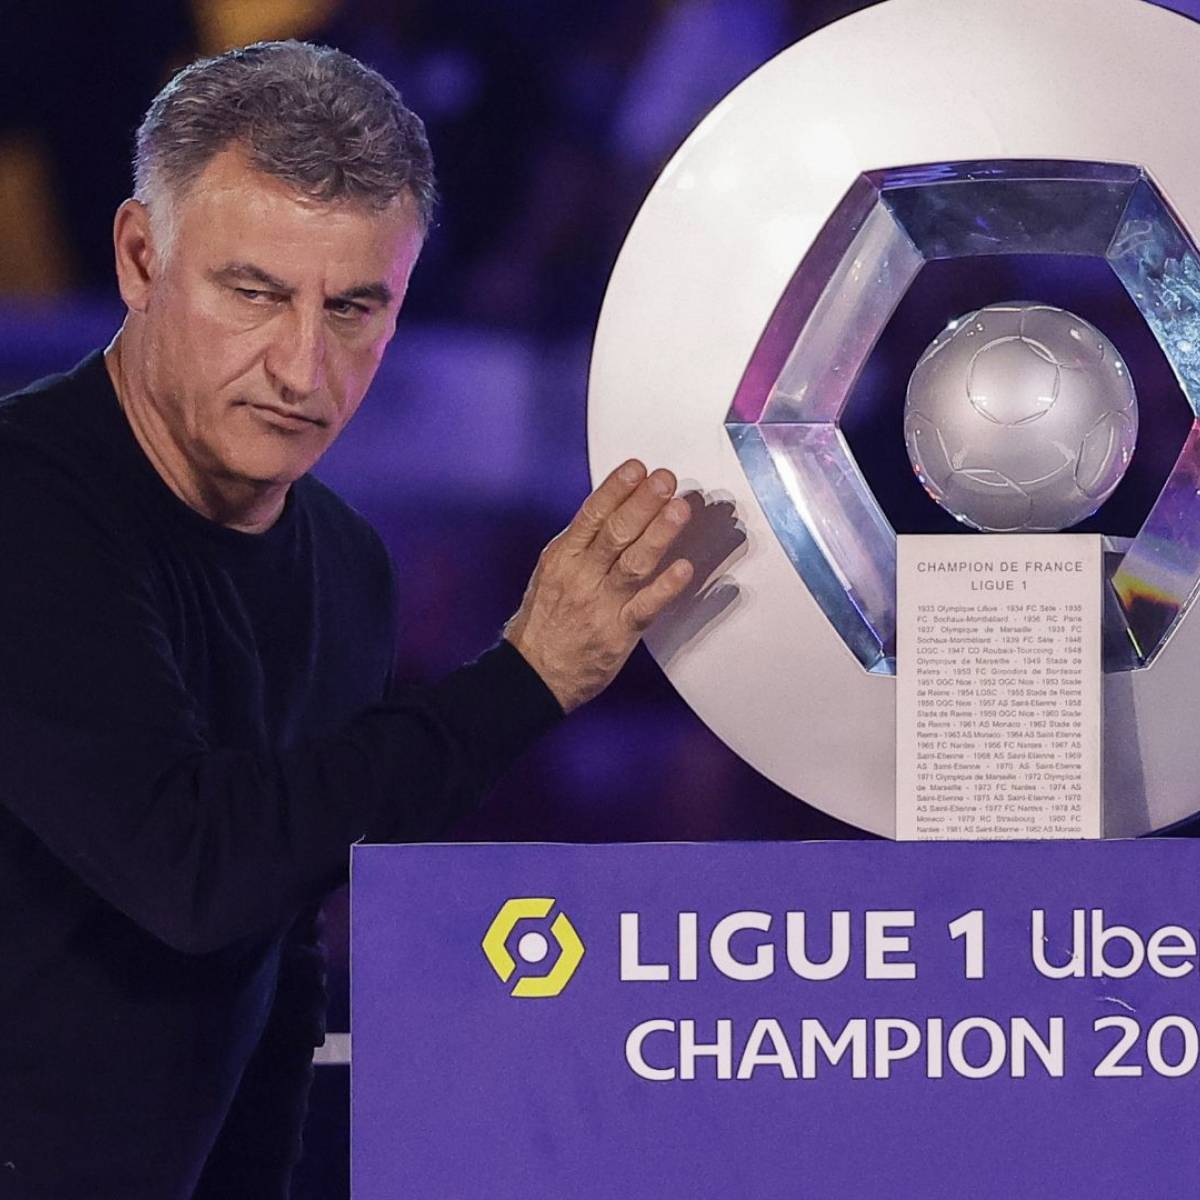 Ligue 1 et ligue 2 : téléchargez les calendriers complets de la saison 2023- 2024 - Le Parisien